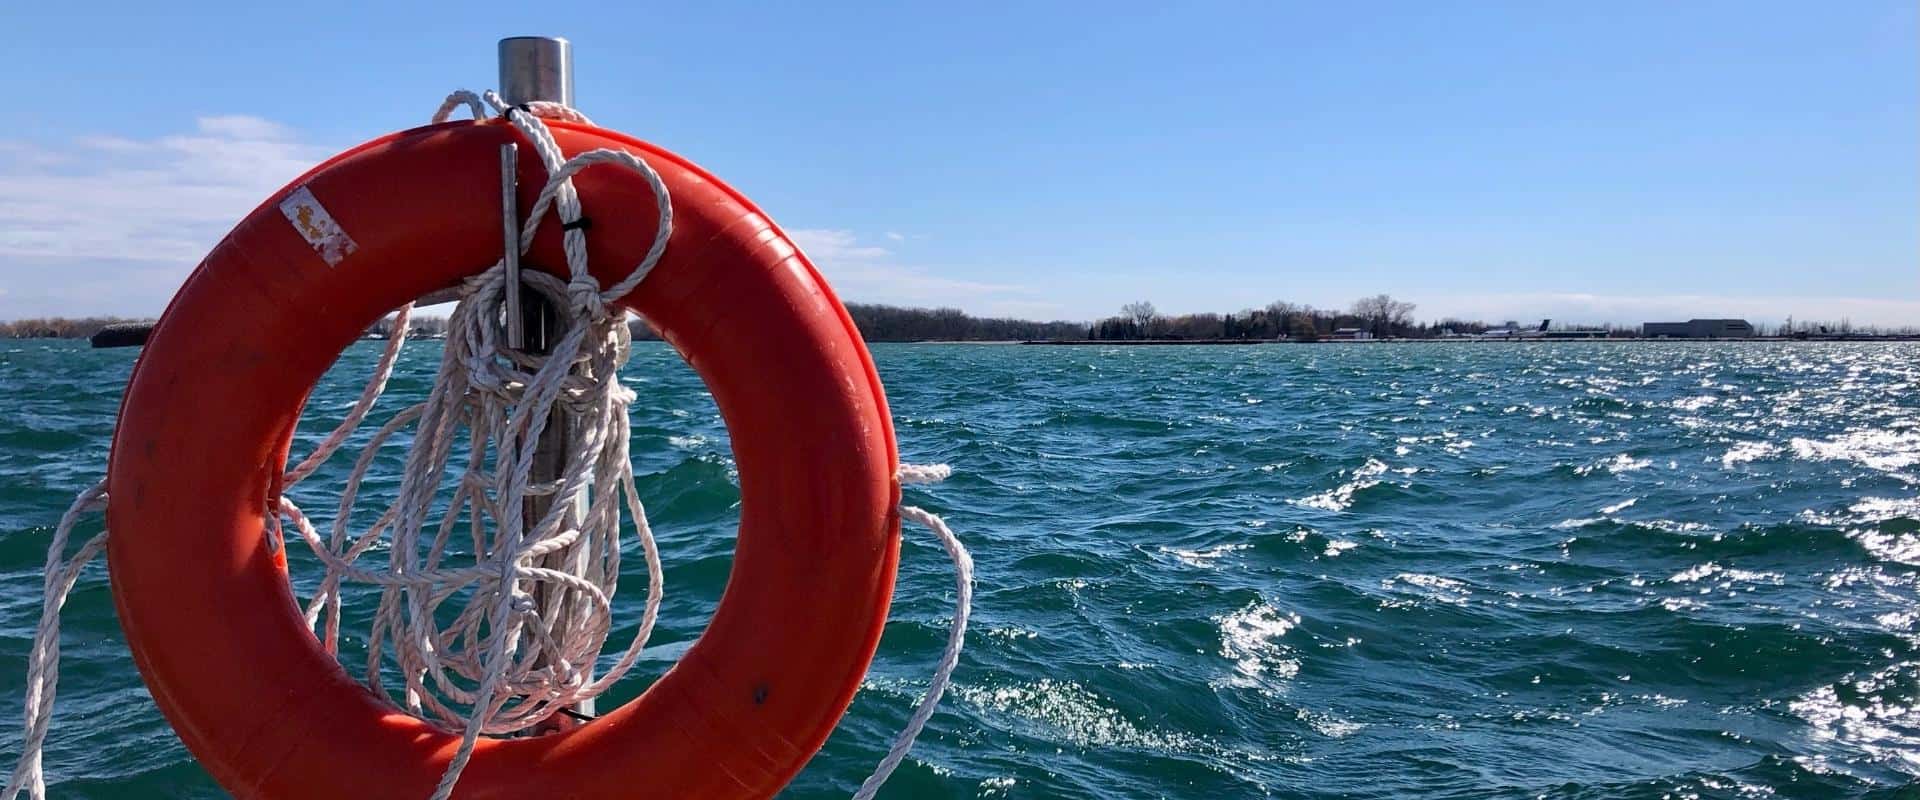 Bouée de sauvetage près du lac Ontario.